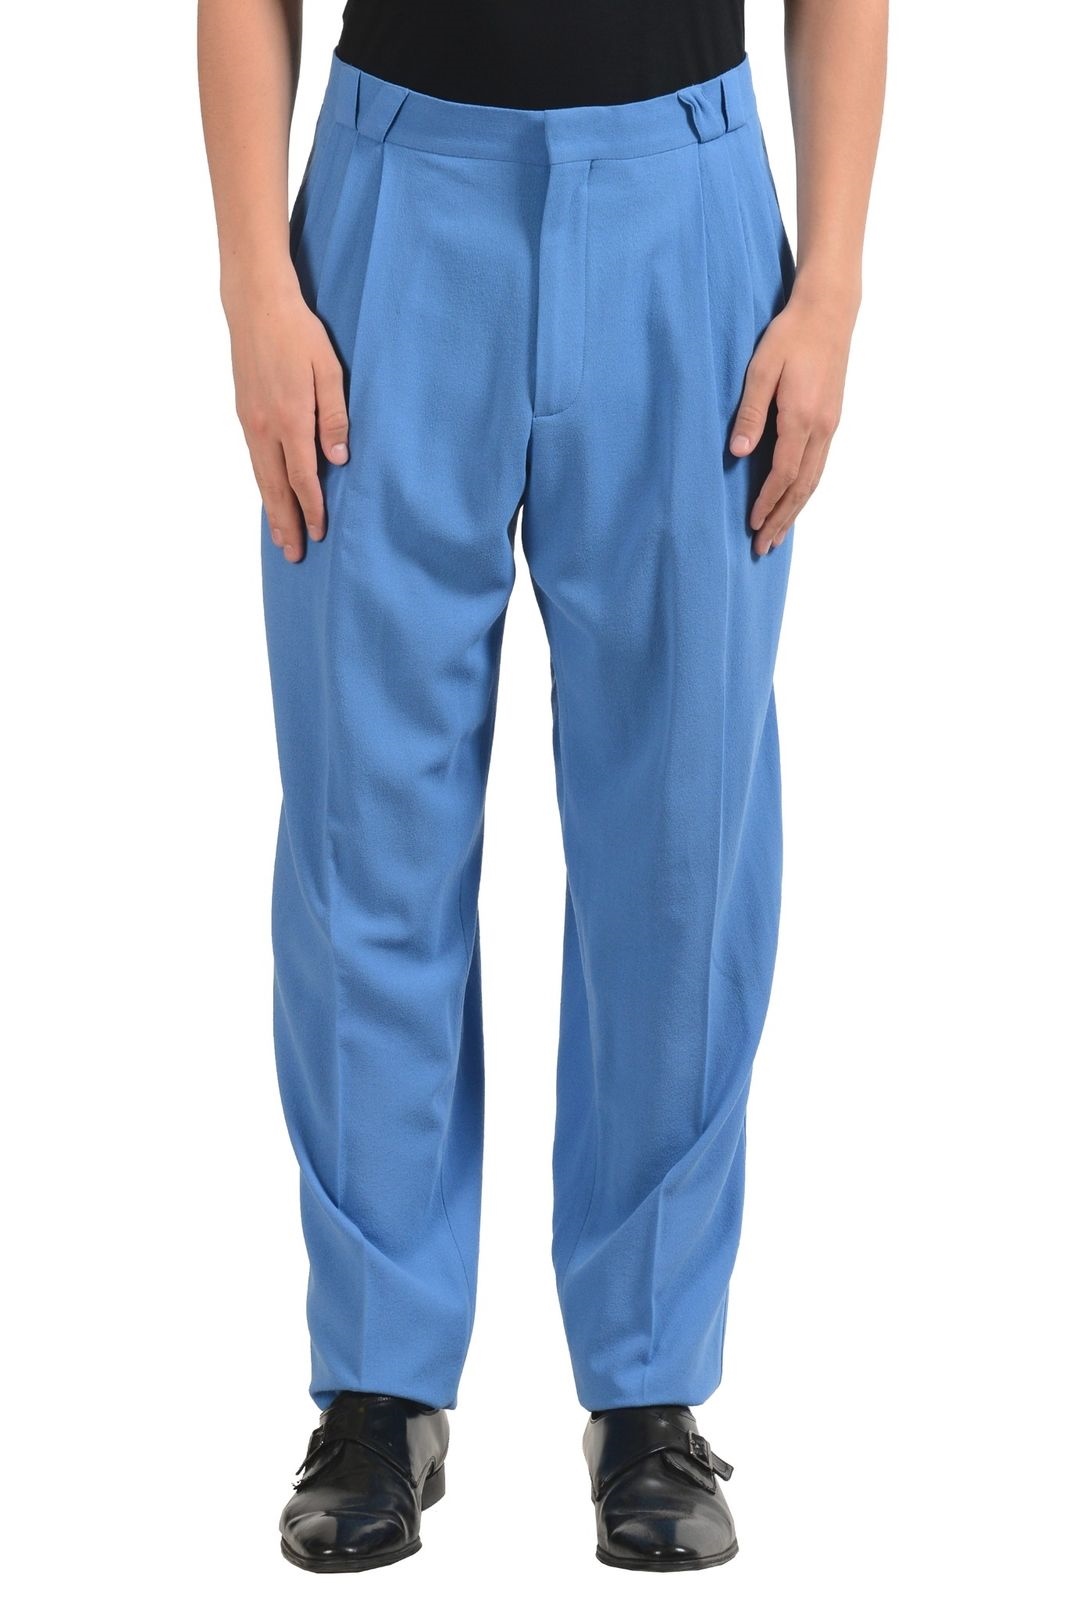 Versace Hombre 100 Lana Azul Vestido Plisado Pantalones Talla 30 32 Ebay